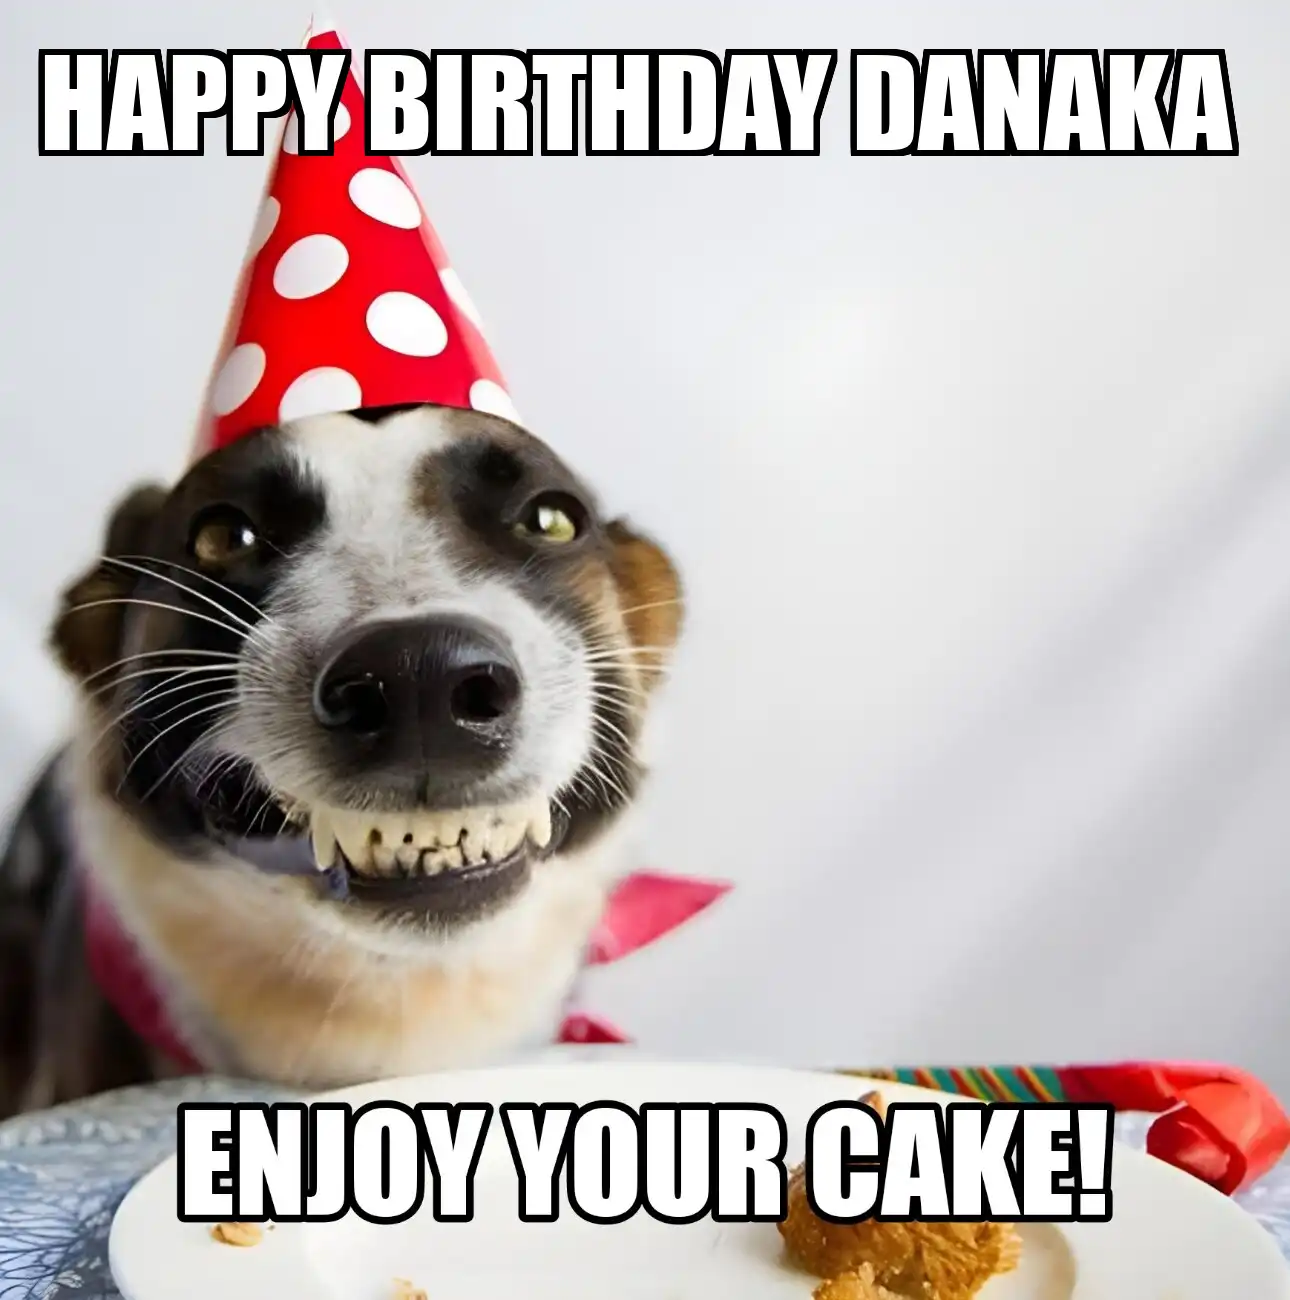 Happy Birthday Danaka Enjoy Your Cake Dog Meme